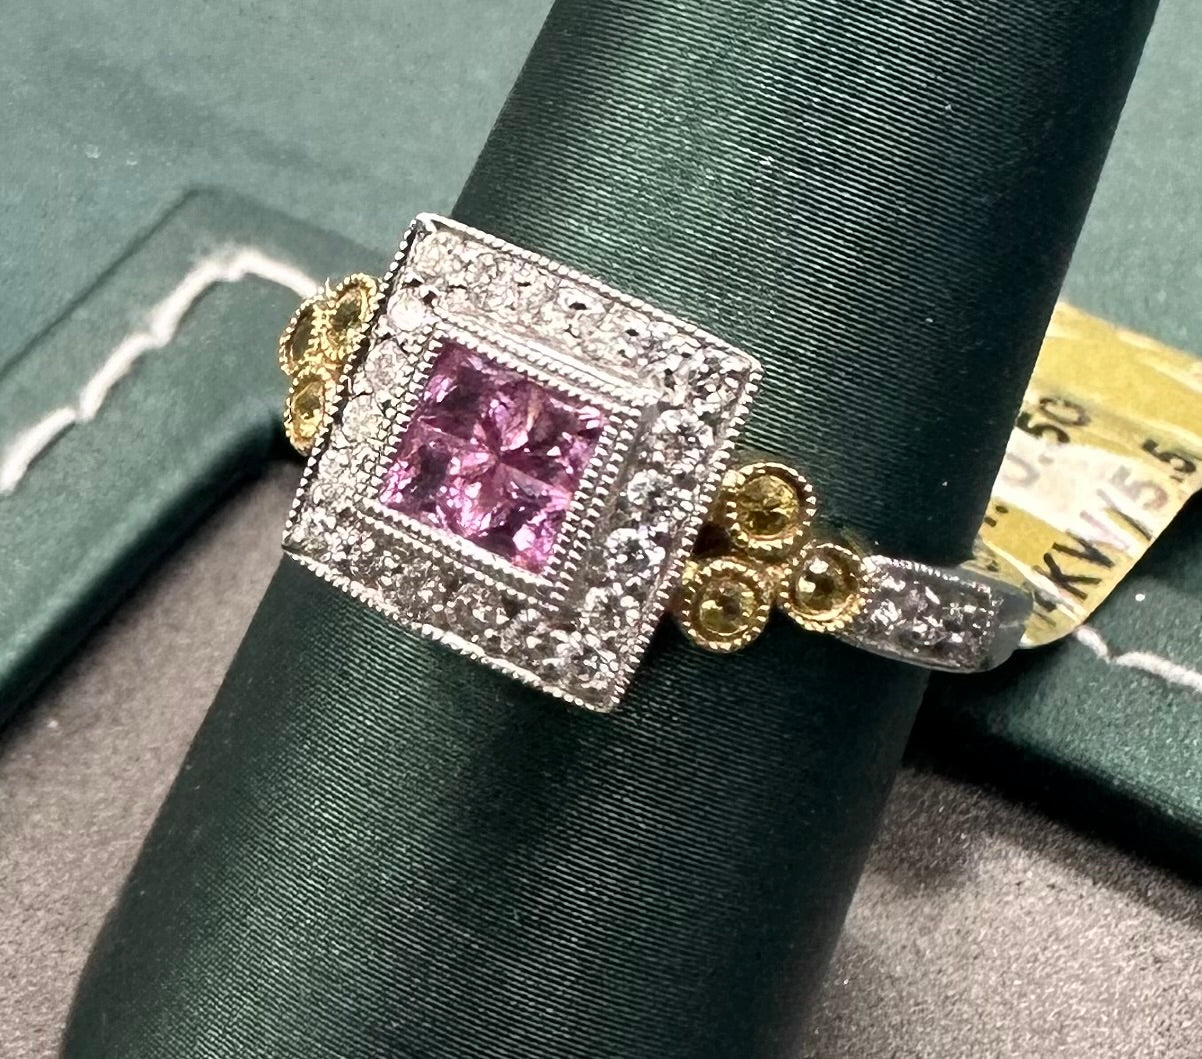 Pink sapphire and diamond princess ring